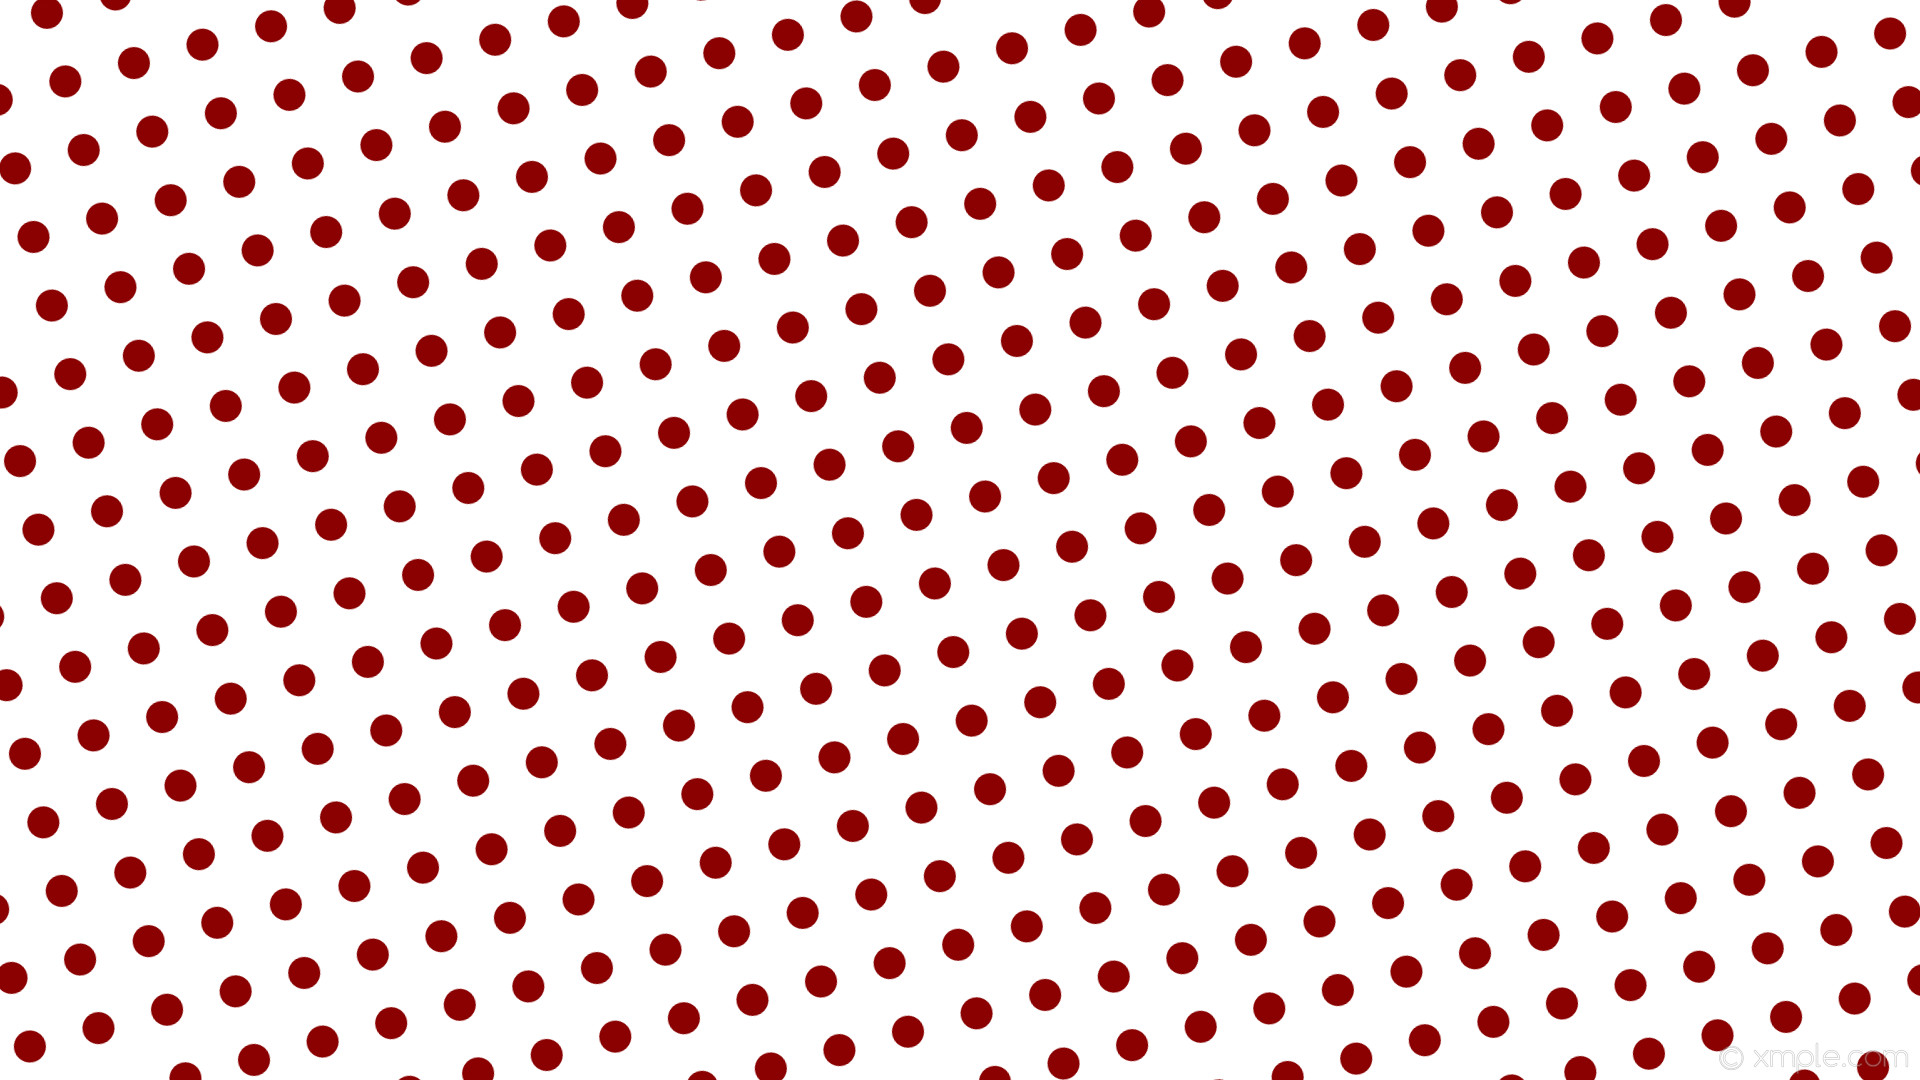 1920x1080 wallpaper red polka dots spots white dark red #ffffff #8b0000 285Â° 32px 71px